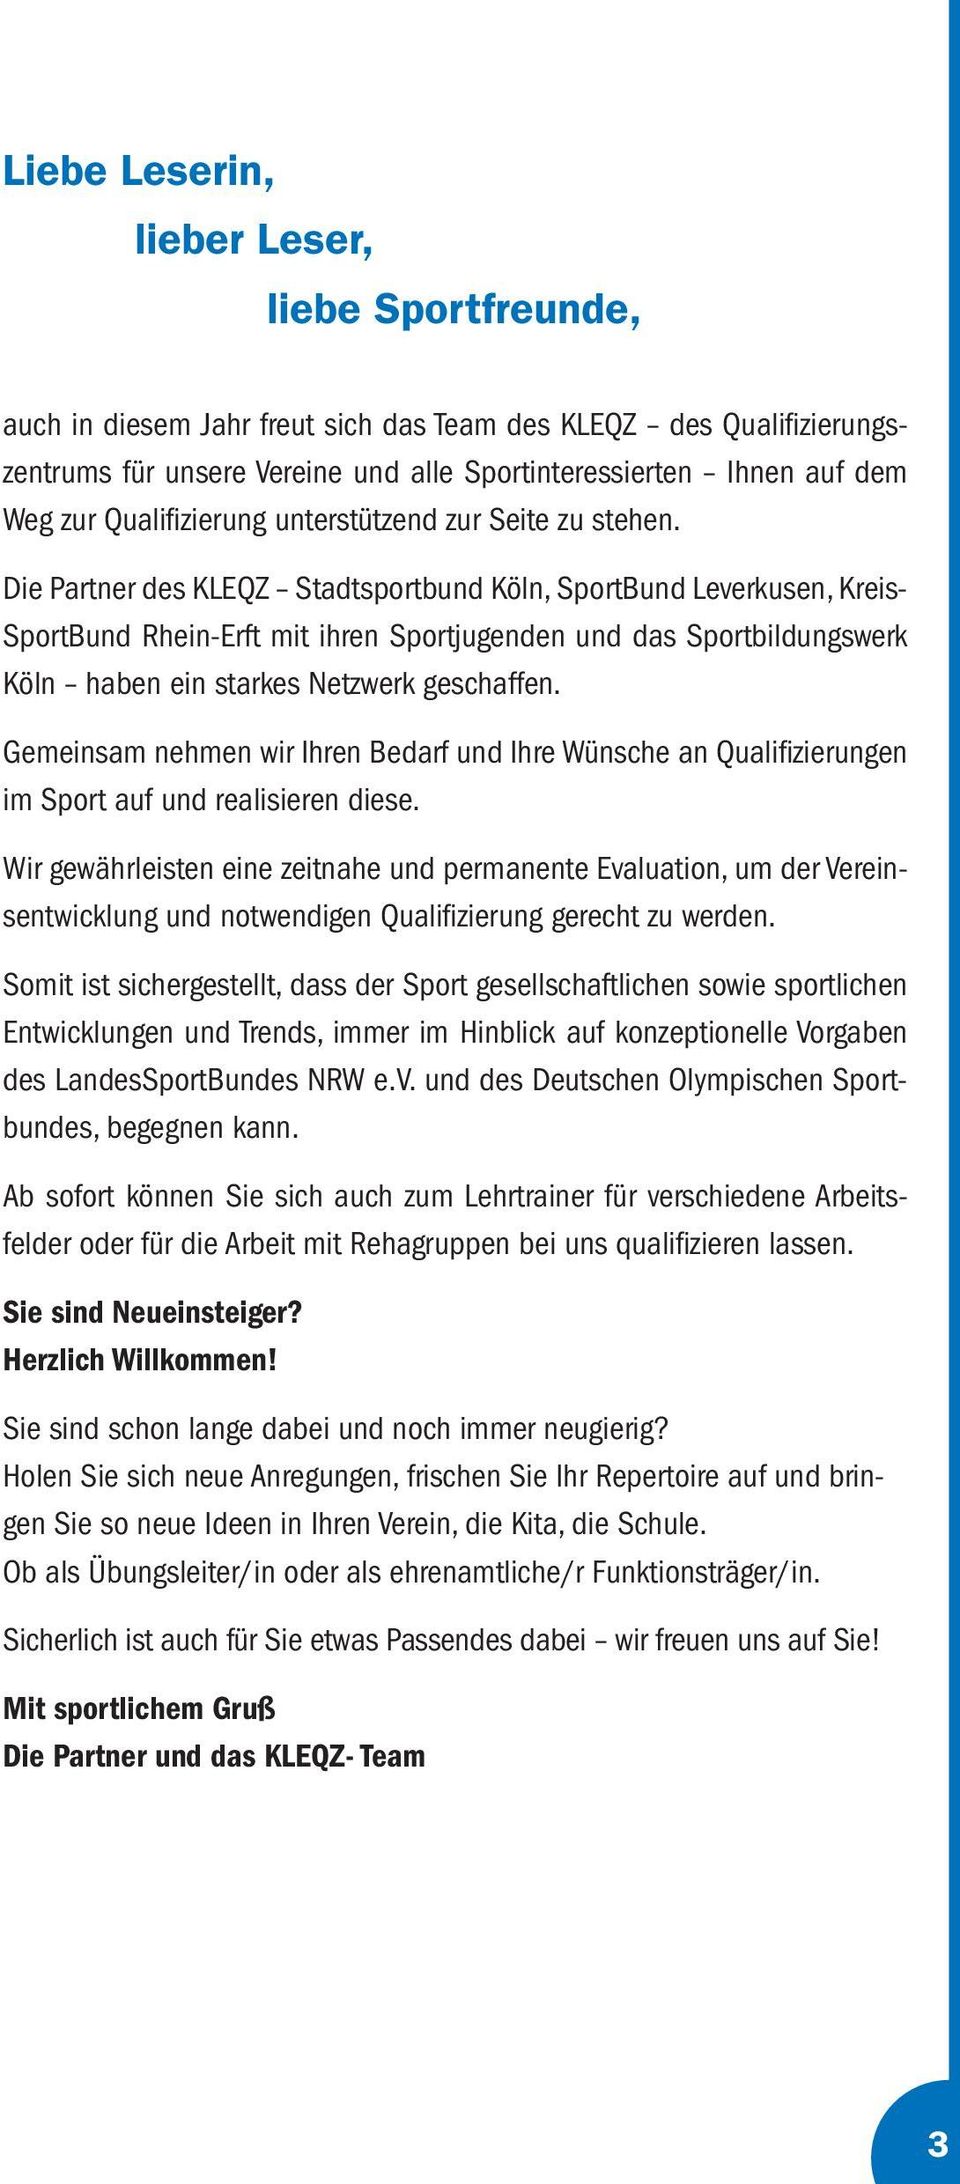 Die Partner des KLEQZ Stadtsportbund Köln, SportBund Leverkusen, Kreis- SportBund Rhein-Erft mit ihren Sportjugenden und das Sportbildungswerk Köln haben ein starkes Netzwerk geschaffen.